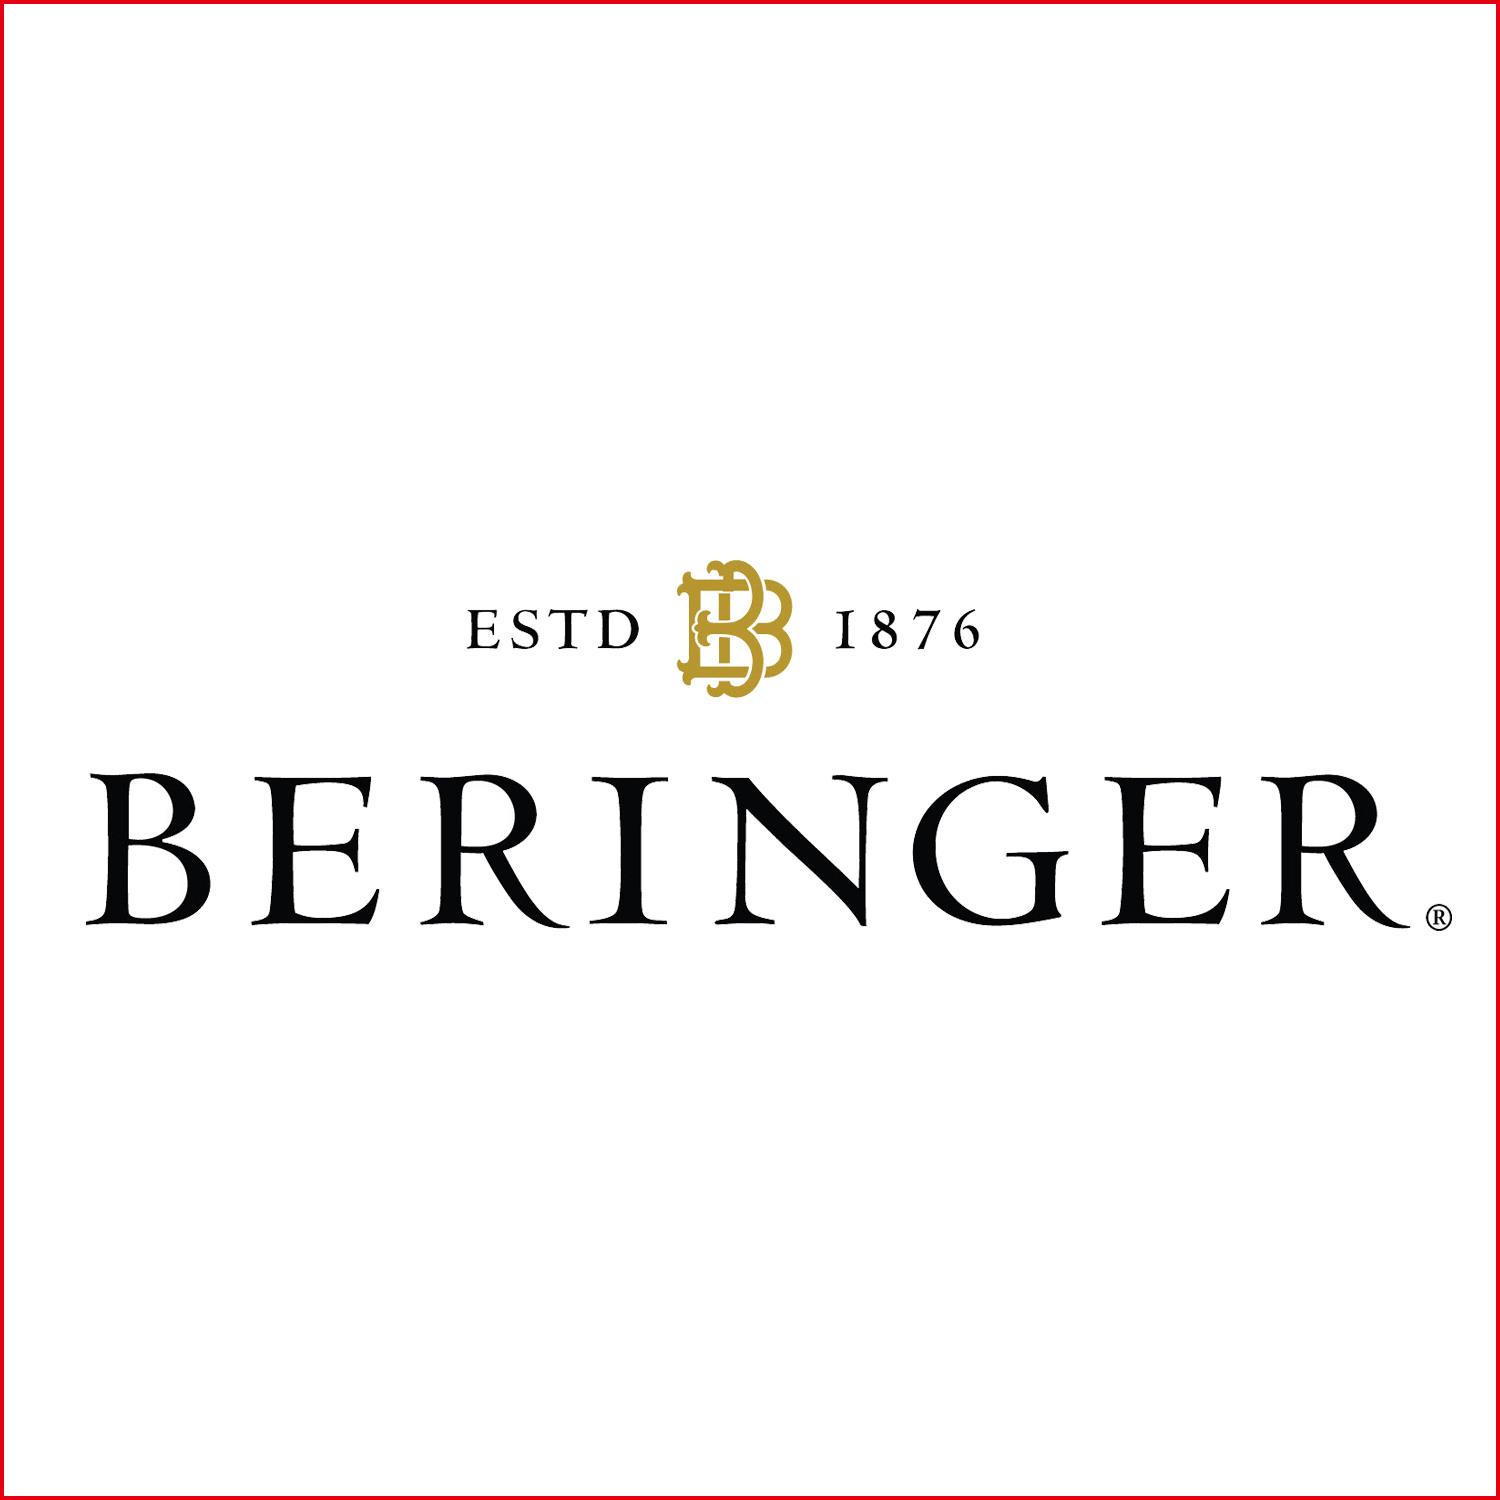 貝林格酒莊 Beringer